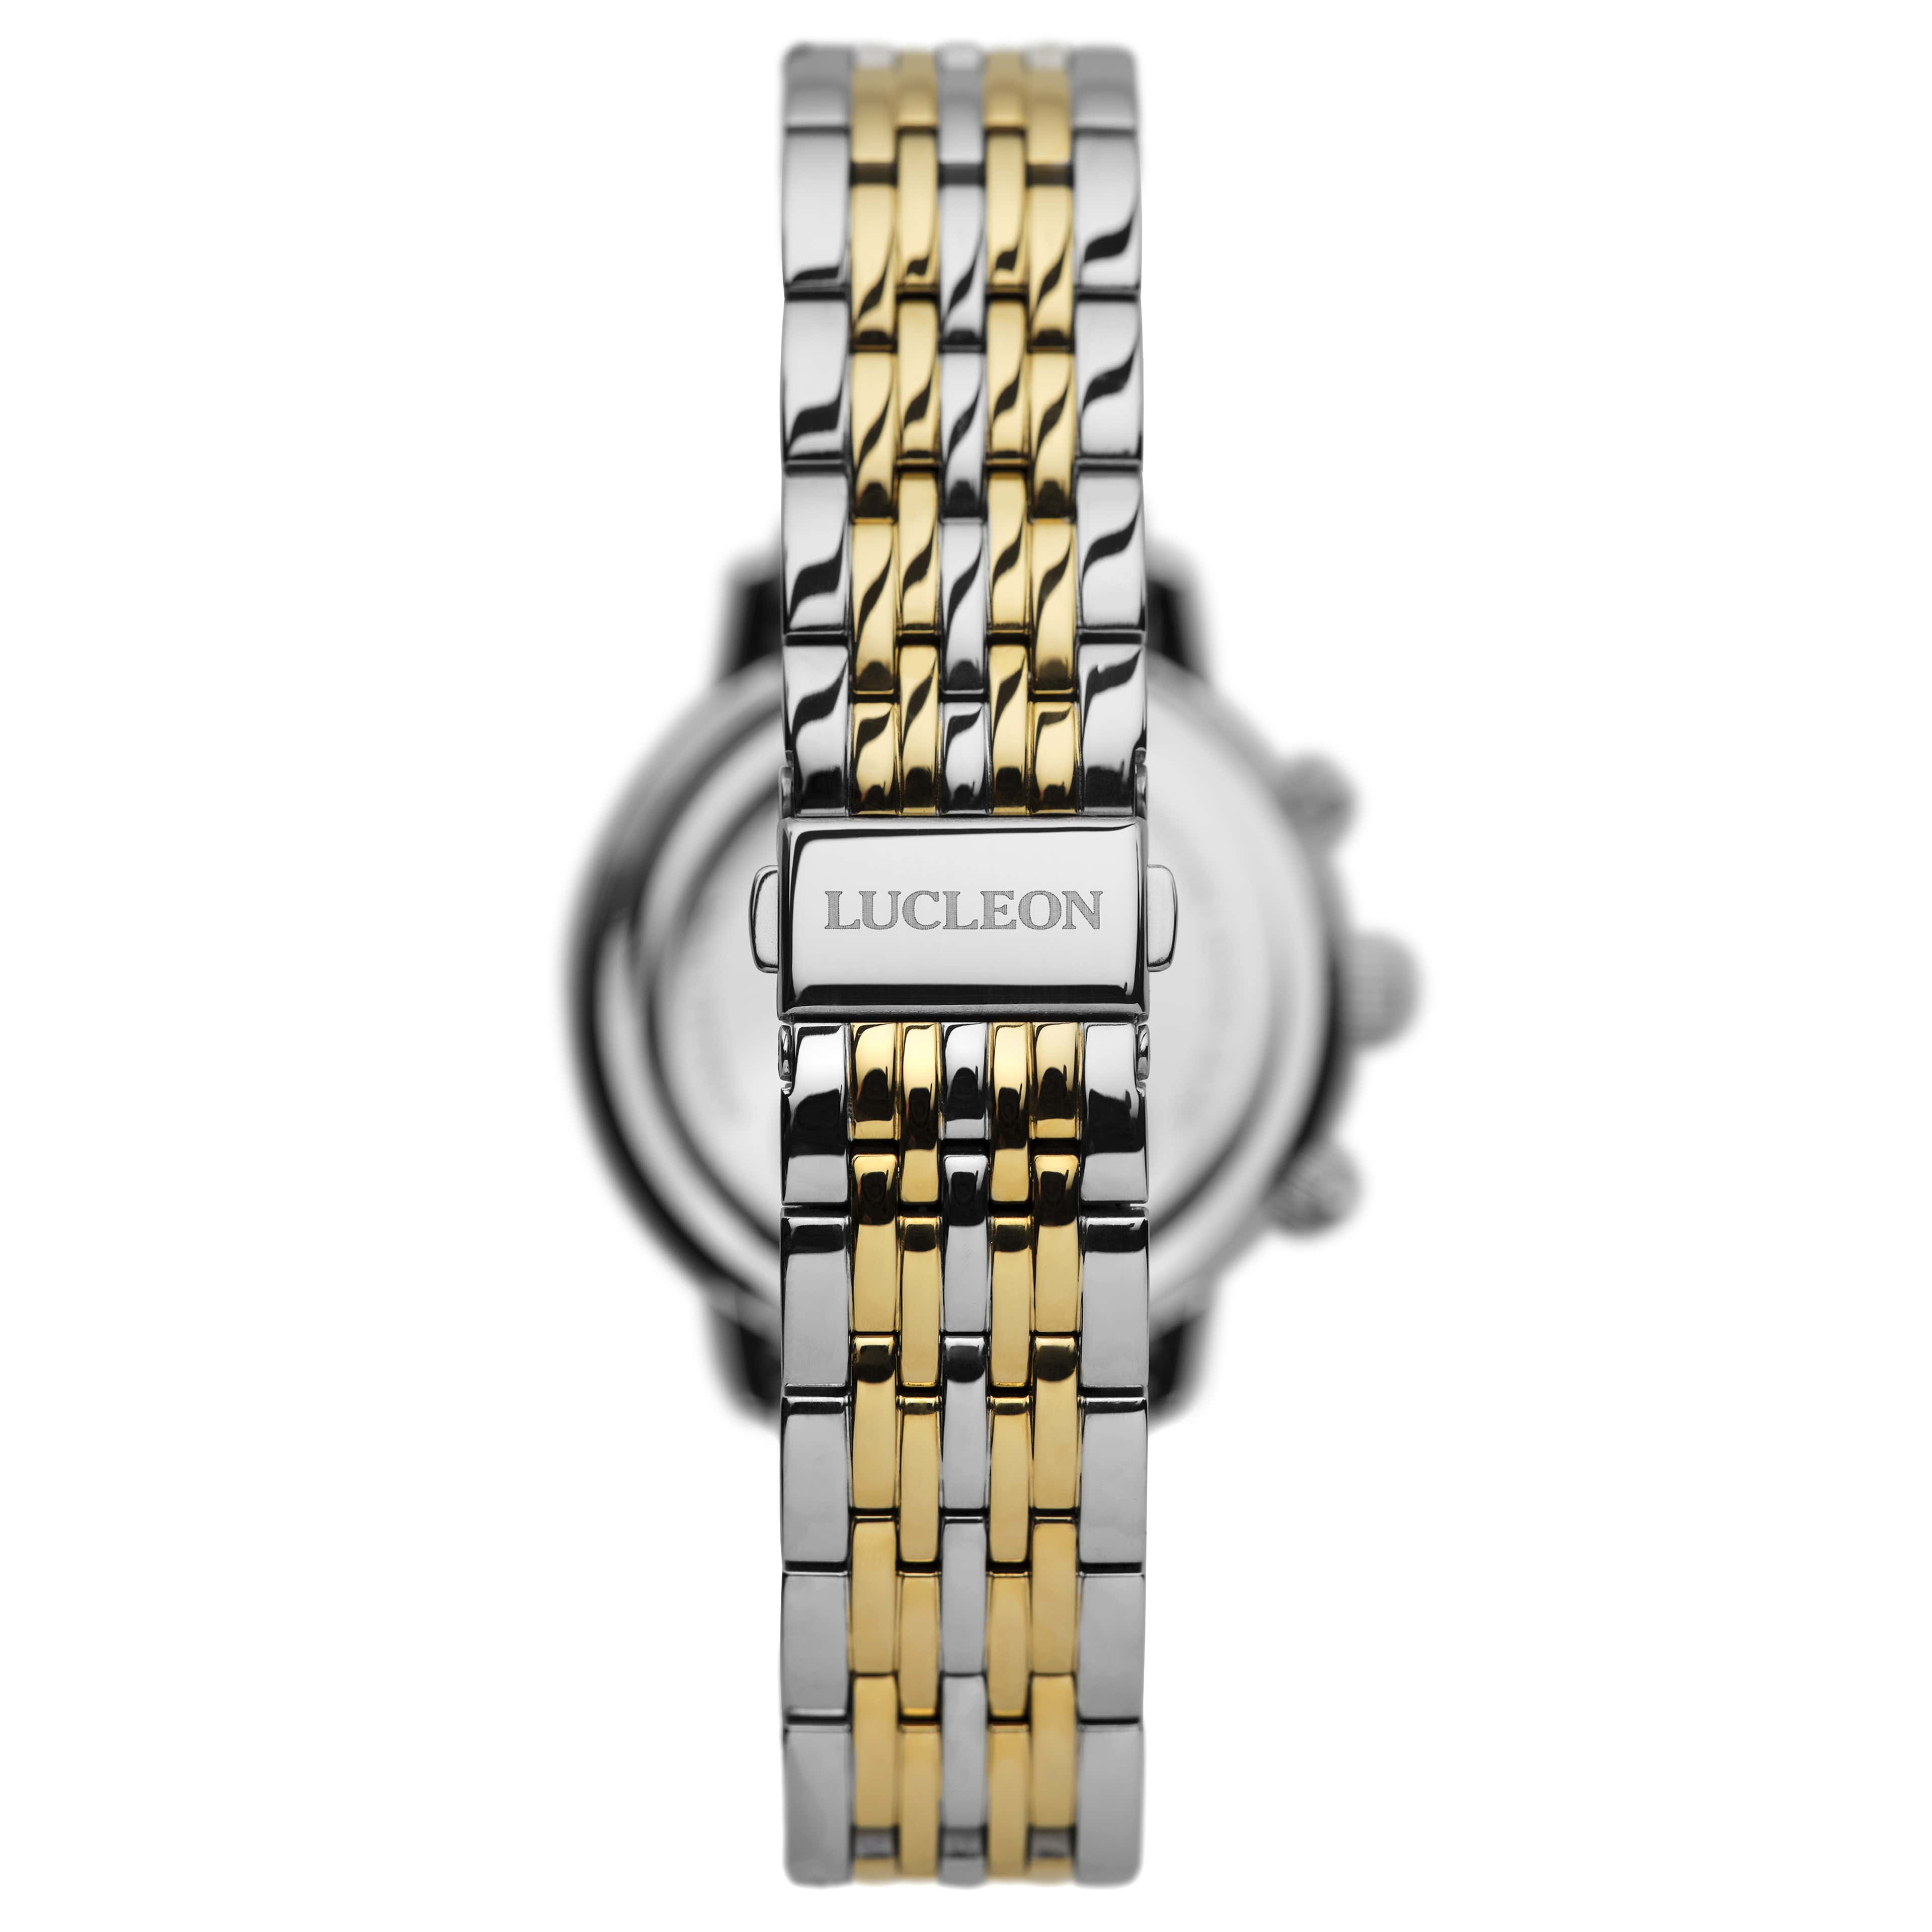 Leroy Kellan Stainless Steel Dual Time Watch - 3 - gallery